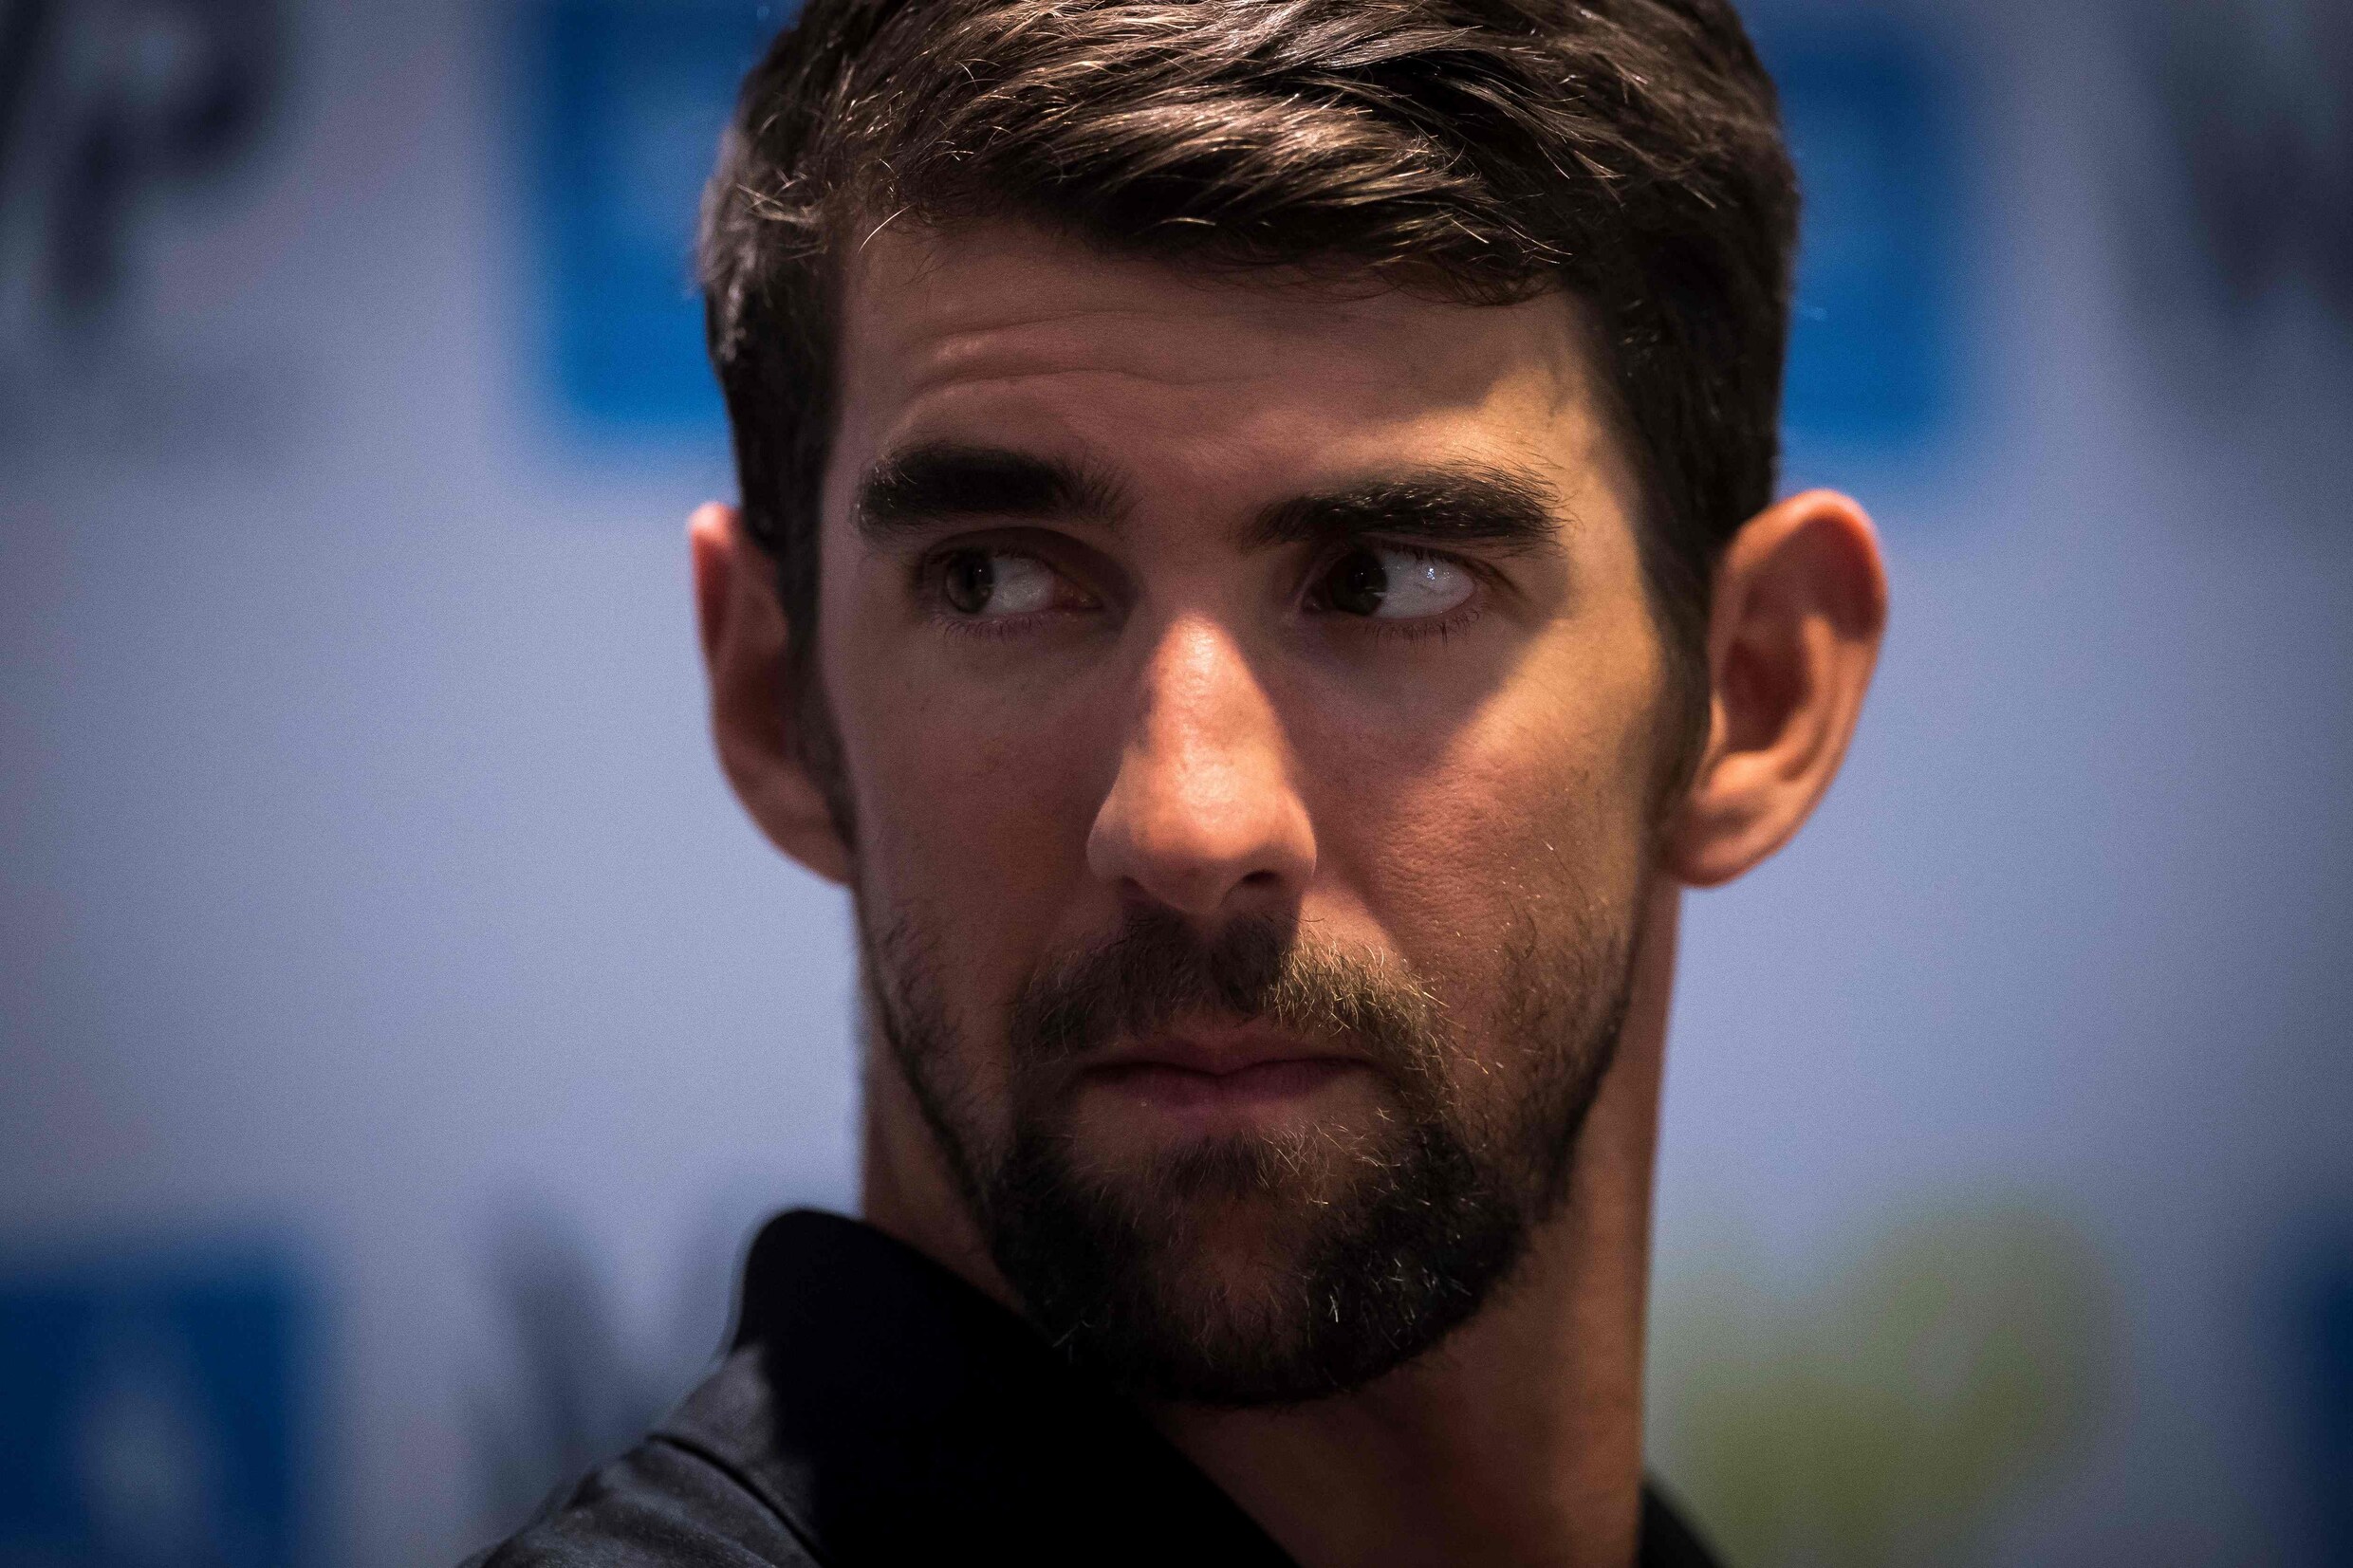 Zwemmer Michael Phelps vocht tijdens zijn carrière tegen depressies en dacht aan zelfmoord